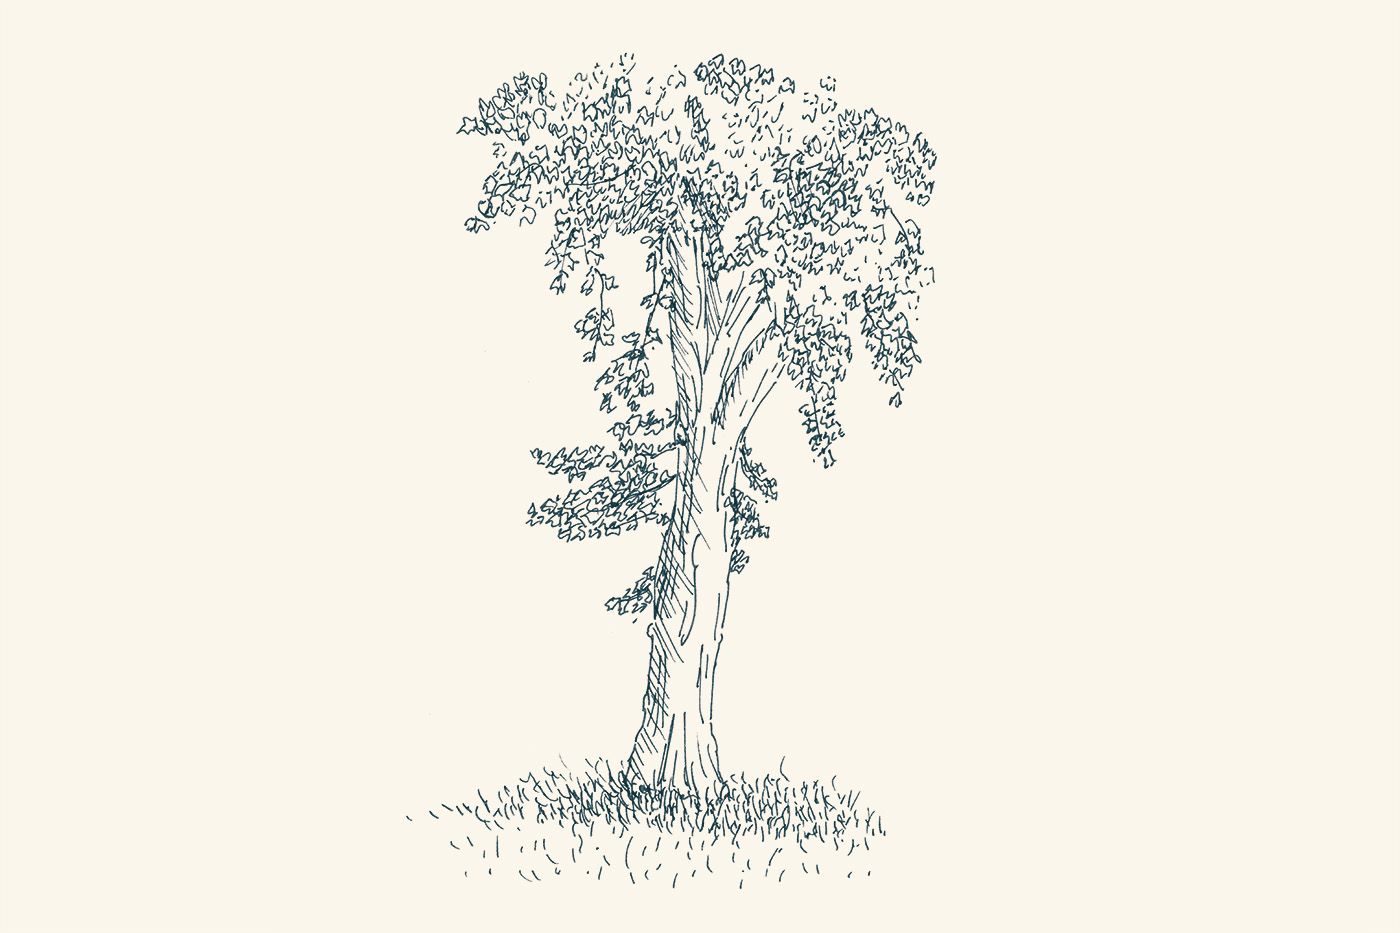 sketches Nature artwork Felt-tip pen and ink moleskine sketchbook trees Landscape foliage paper